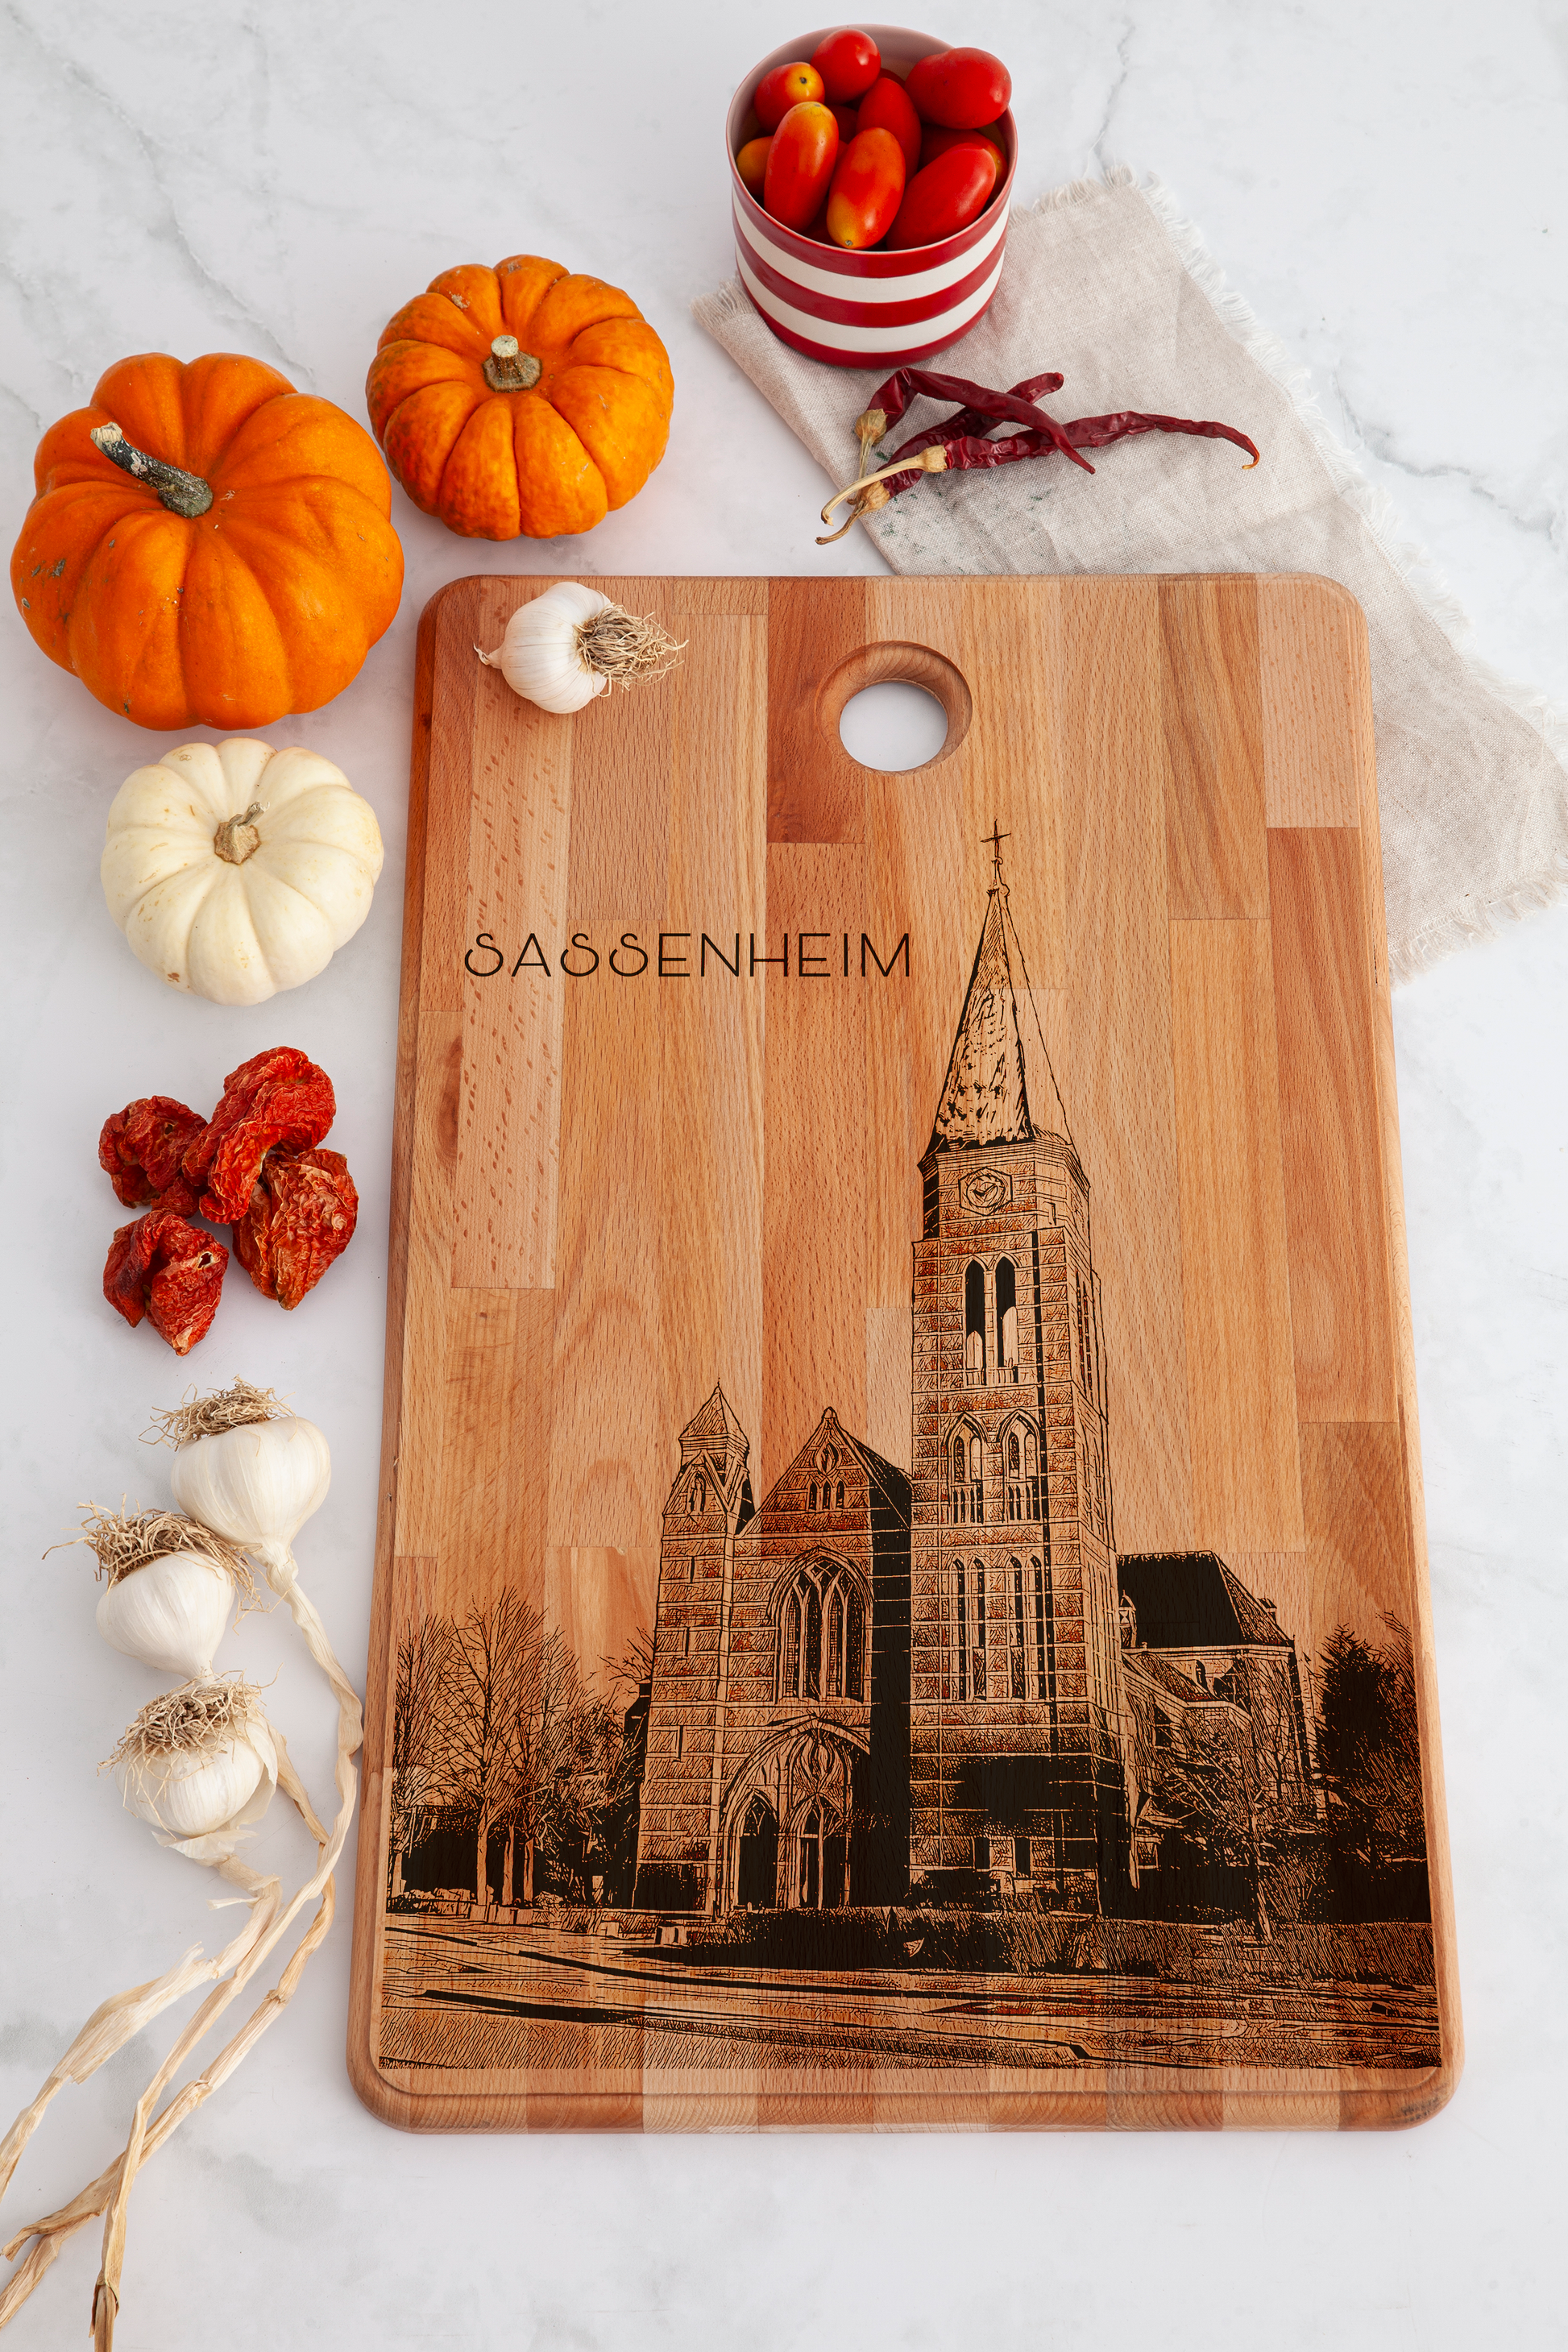 Sassenheim, Sint-Pancratiuskerk, cutting board, on countertop